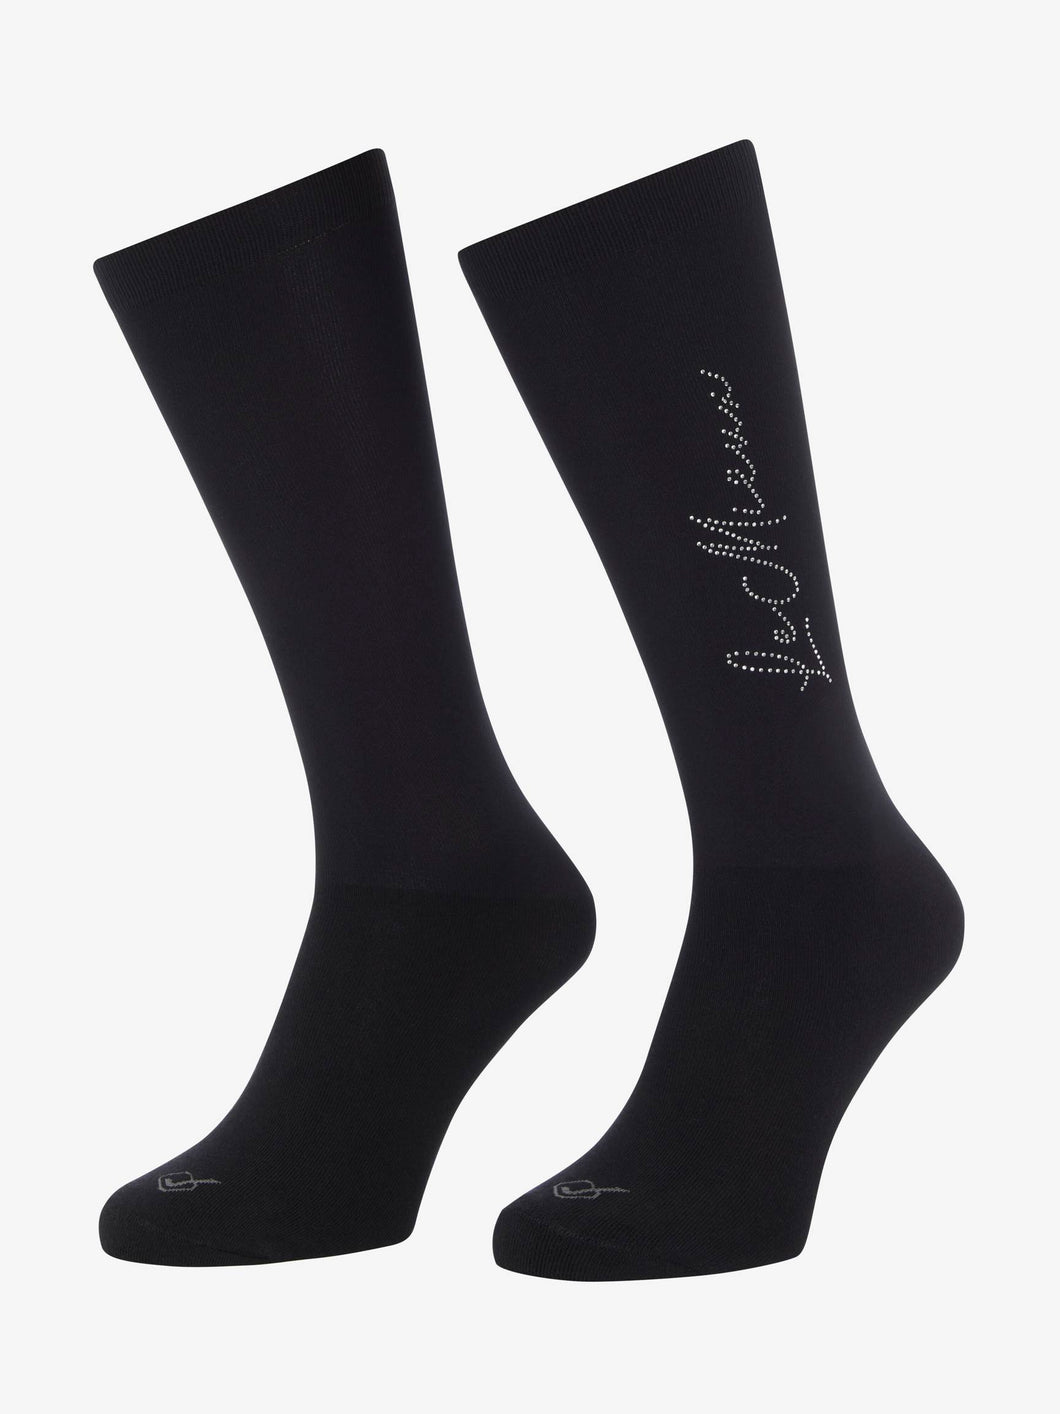 LeMieux Sparkle Competition Socks